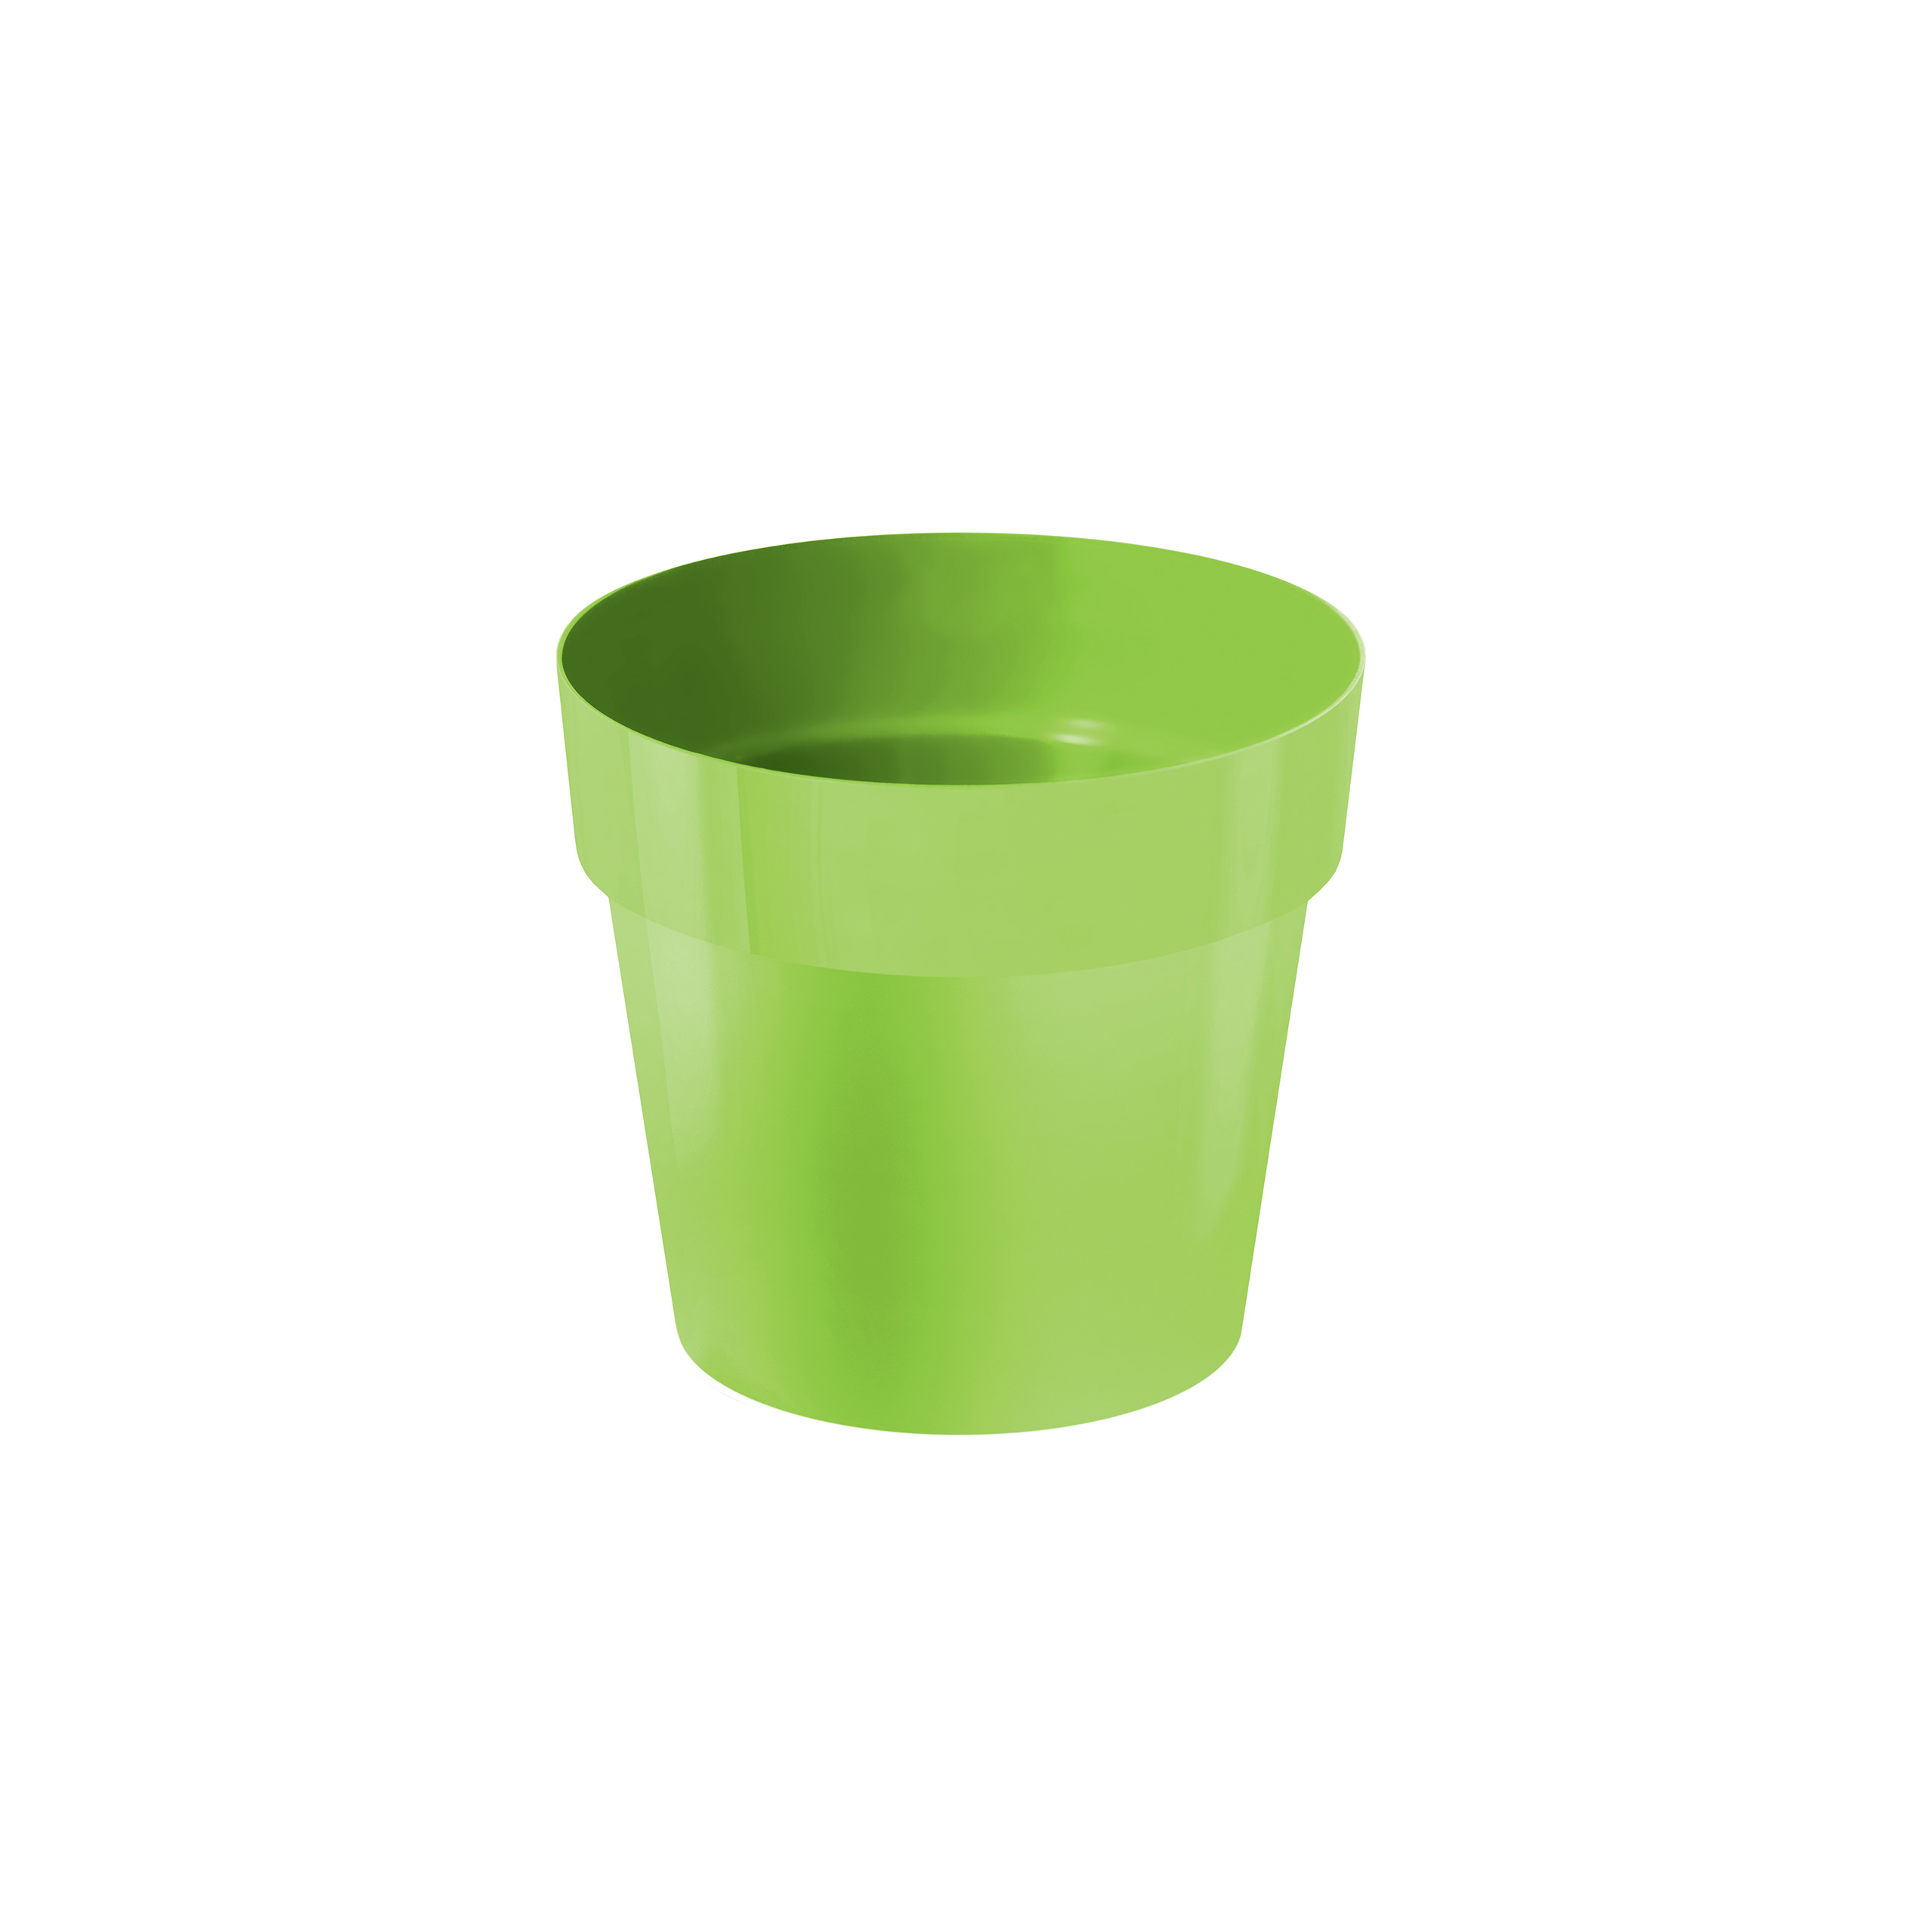 IML flowerpot DR140 Lime green